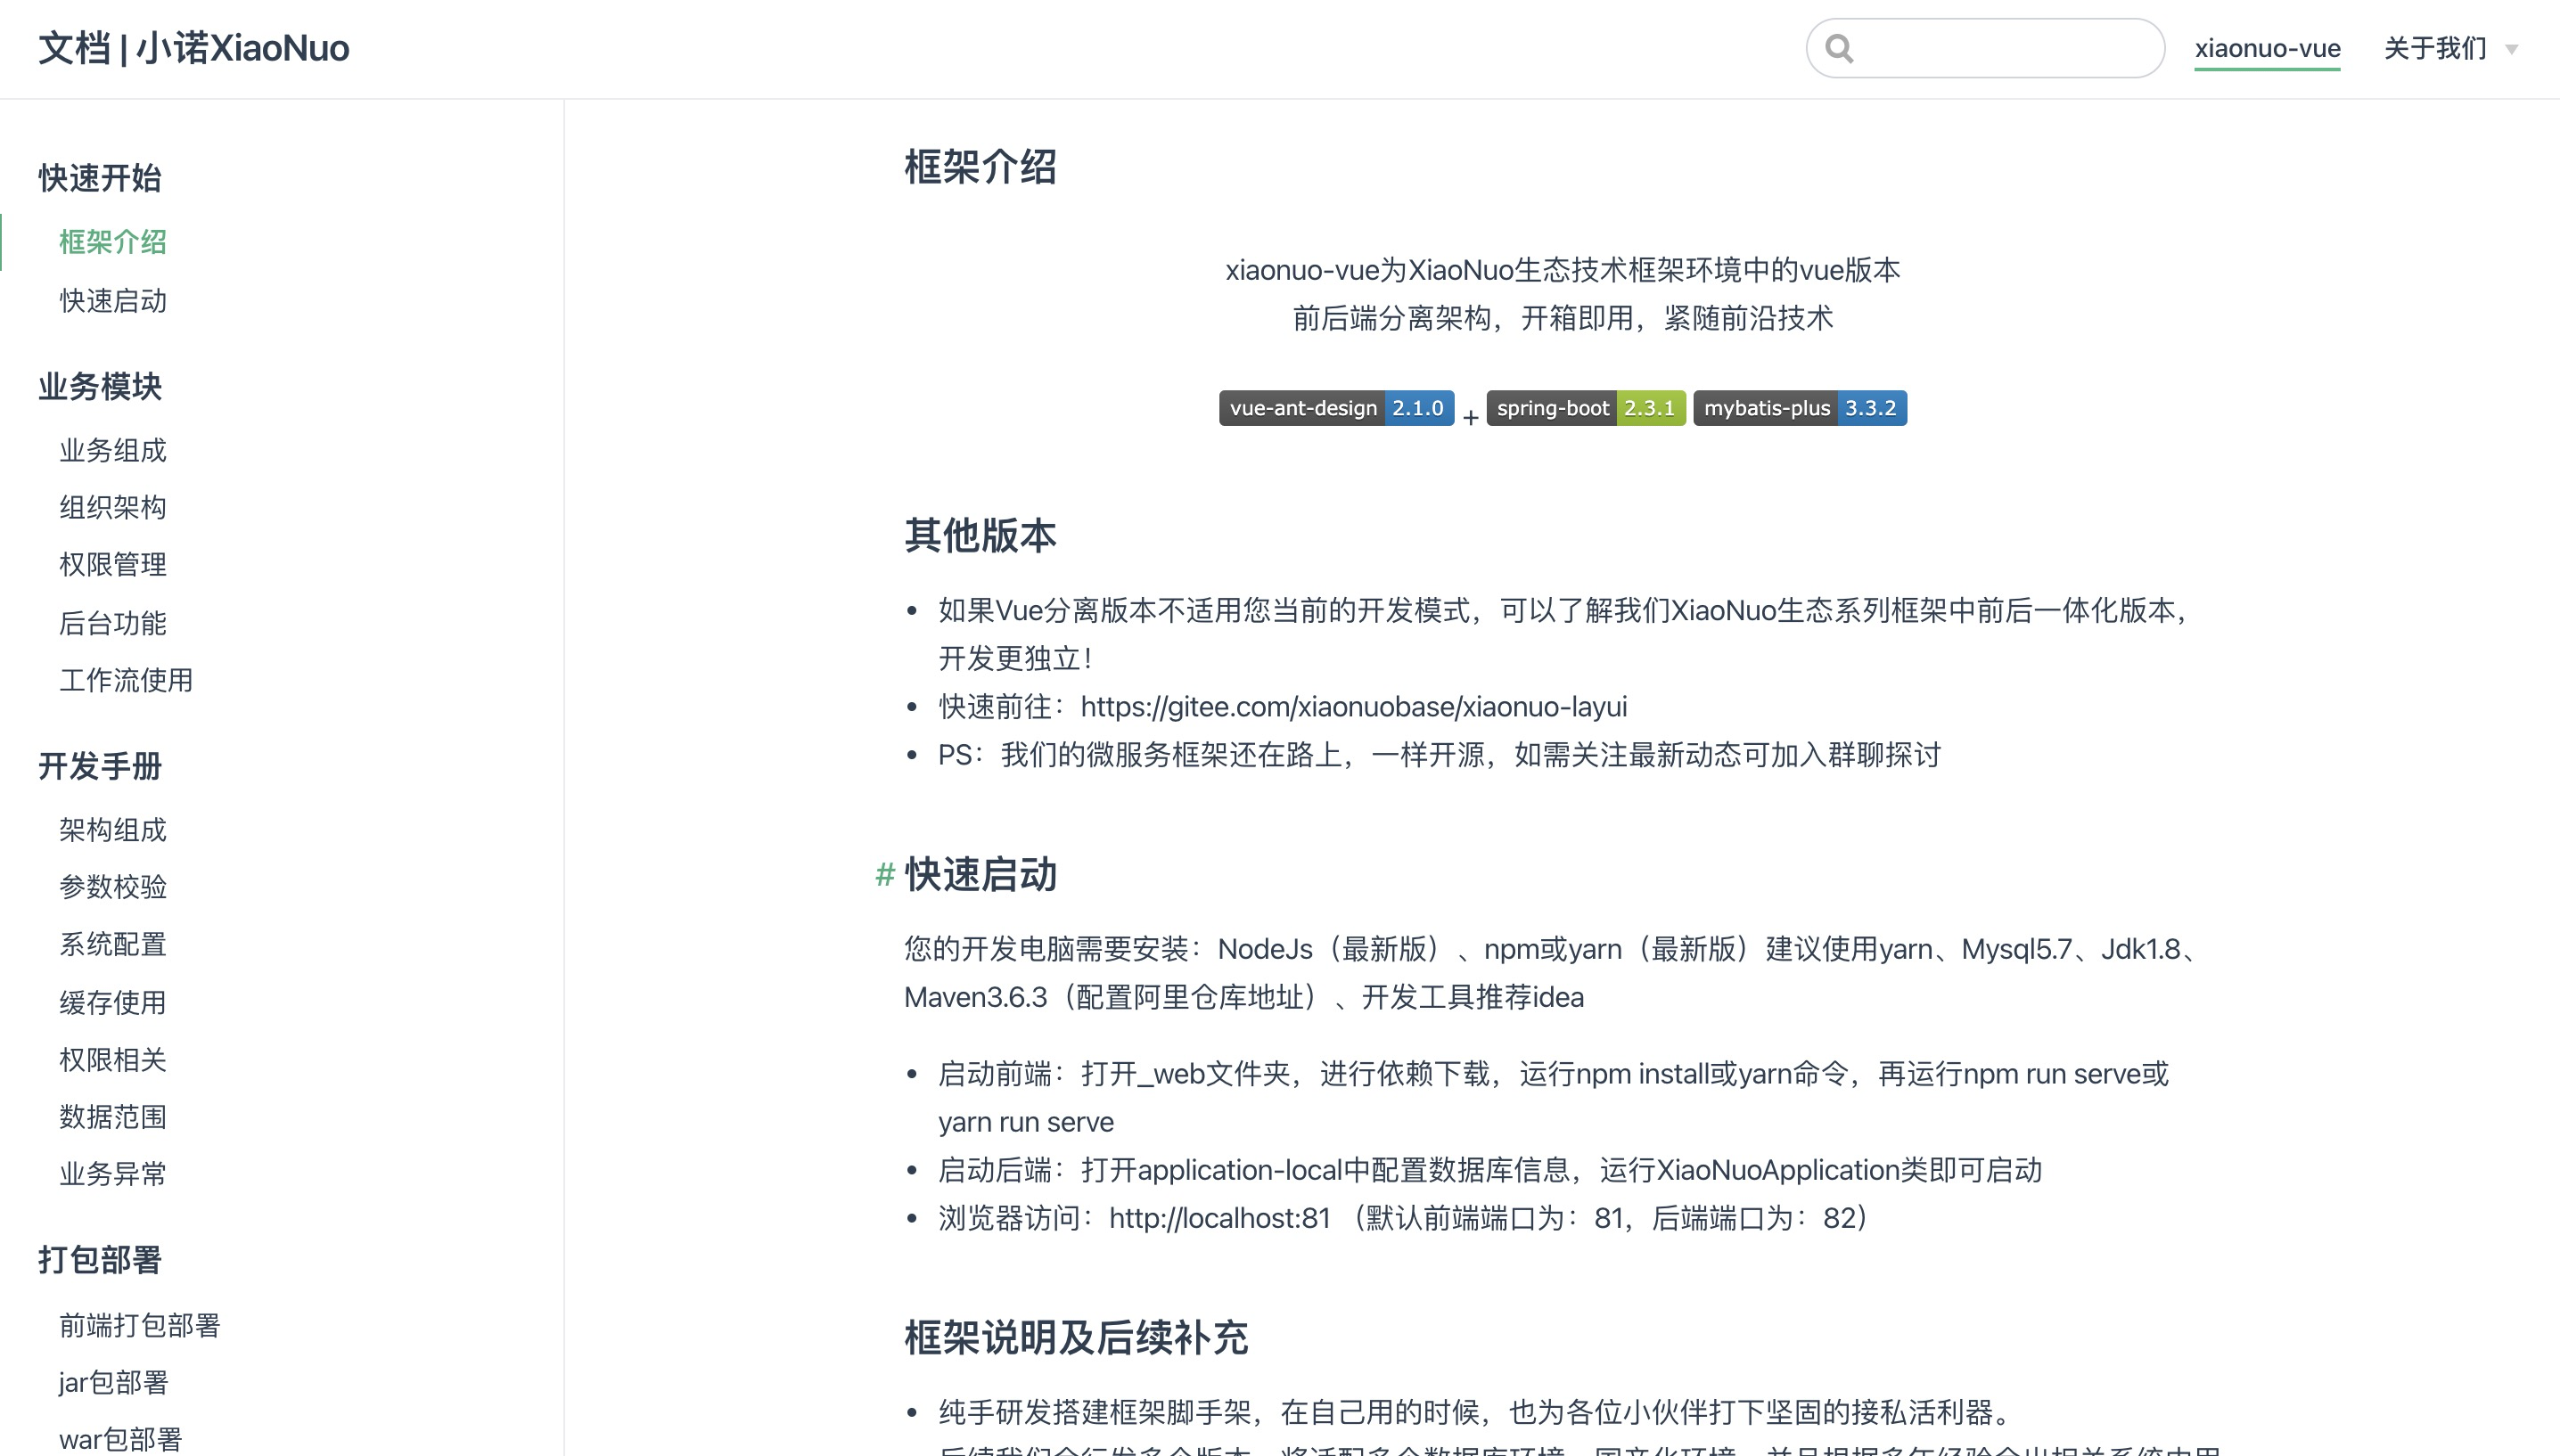 XiaoNuo 快速开发平台文档已发布